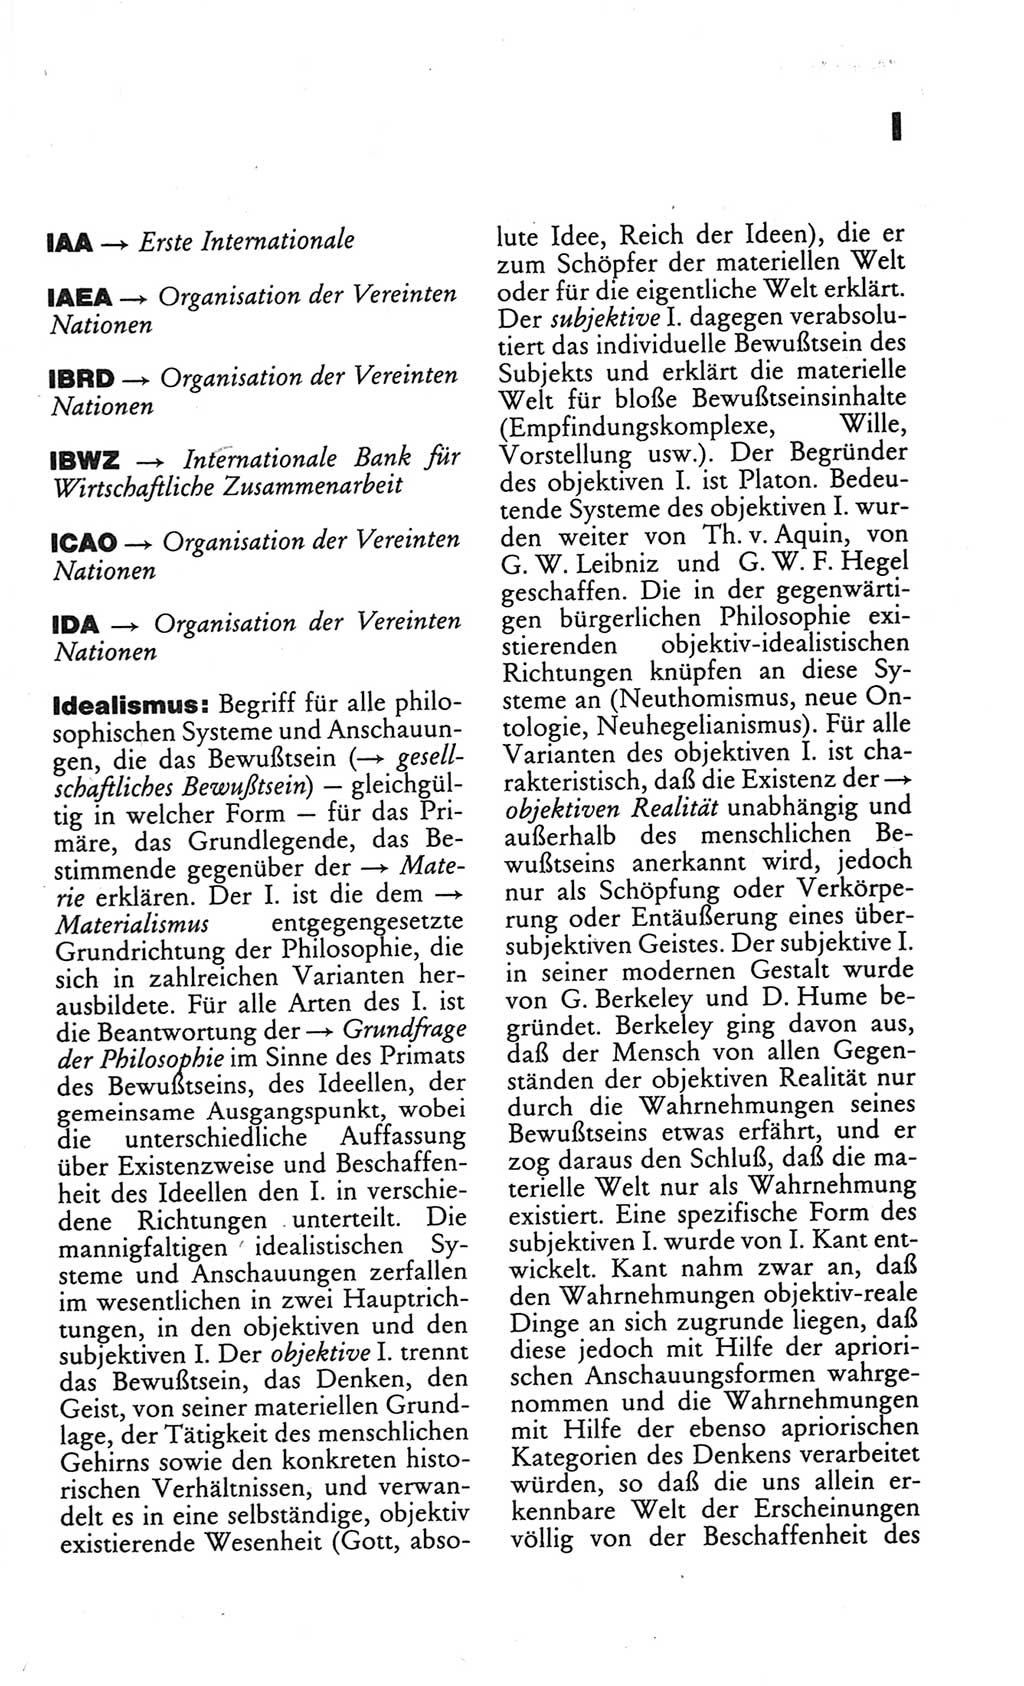 Kleines politisches Wörterbuch [Deutsche Demokratische Republik (DDR)] 1986, Seite 379 (Kl. pol. Wb. DDR 1986, S. 379)